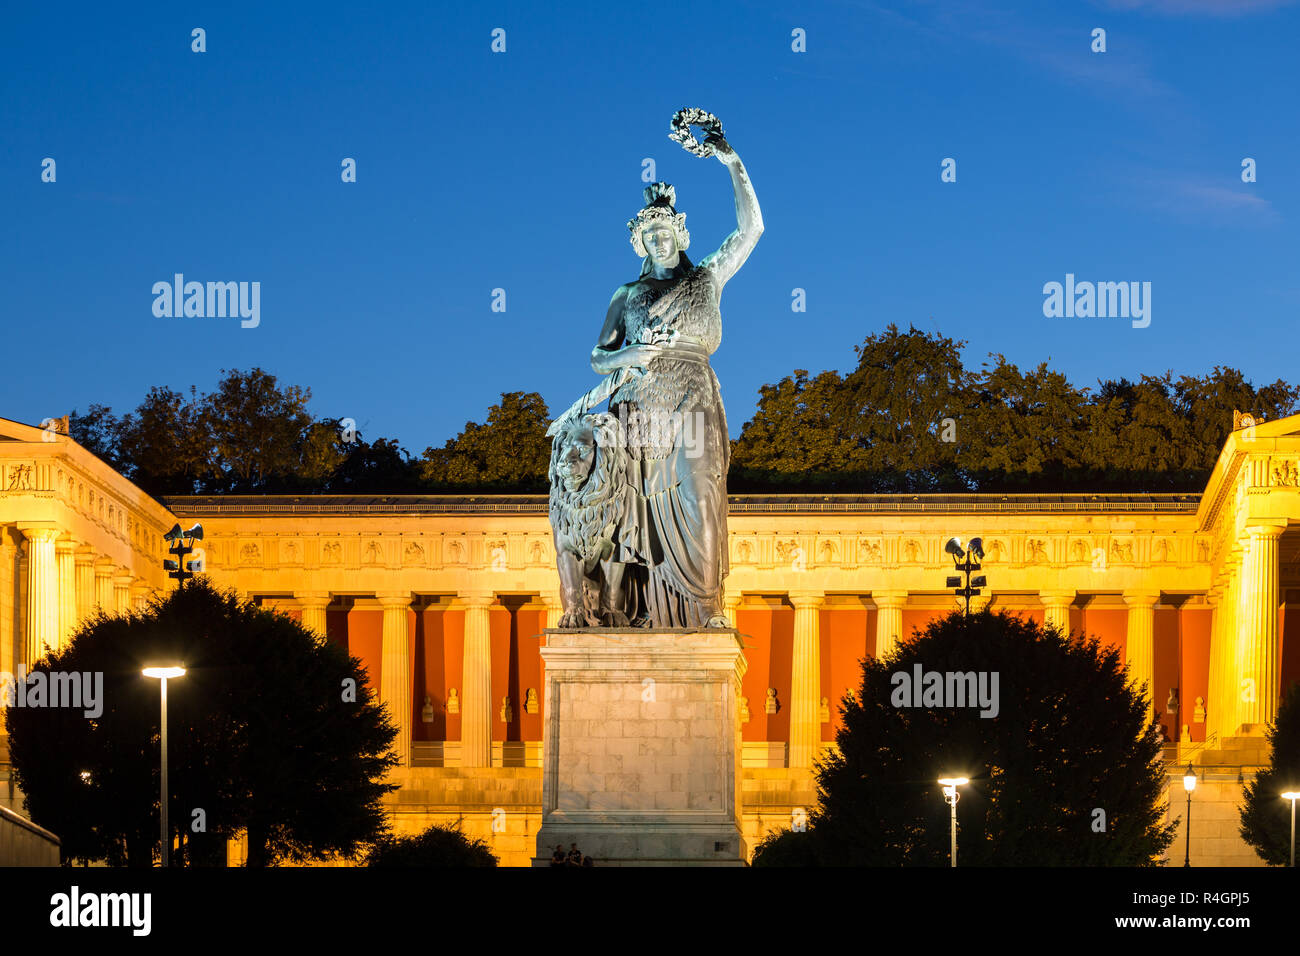 Statua in bronzo della Baviera nella parte anteriore del Hall of Fame, crepuscolo, Theresienwiese, Monaco di Baviera, Germania Foto Stock